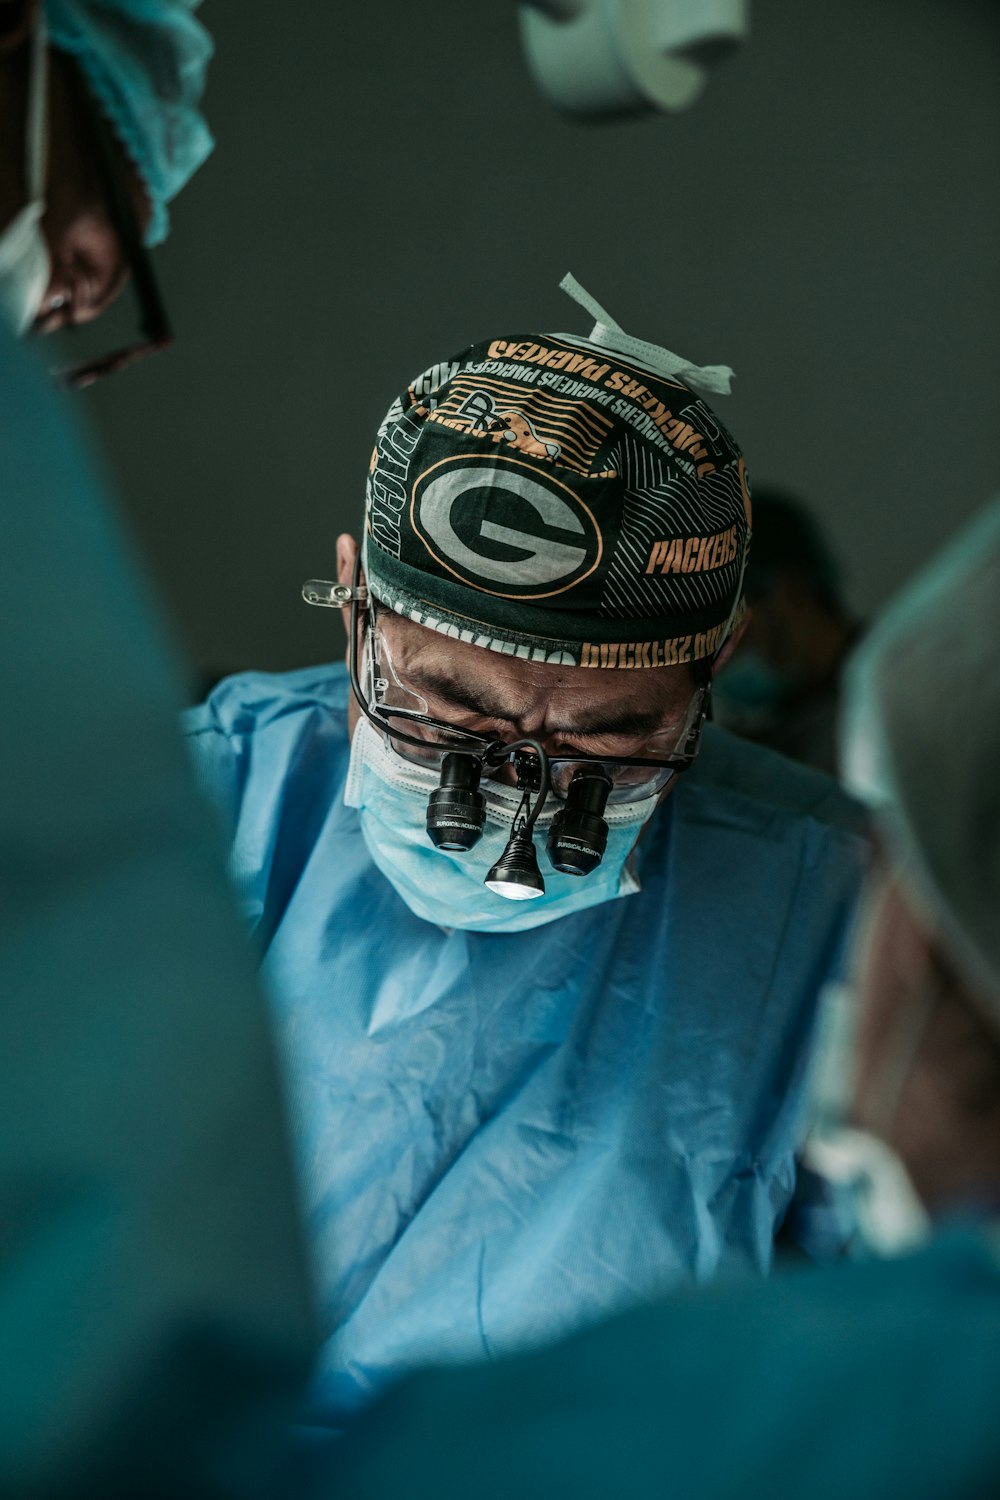 Arzt mit Green Bay Packers-Hut